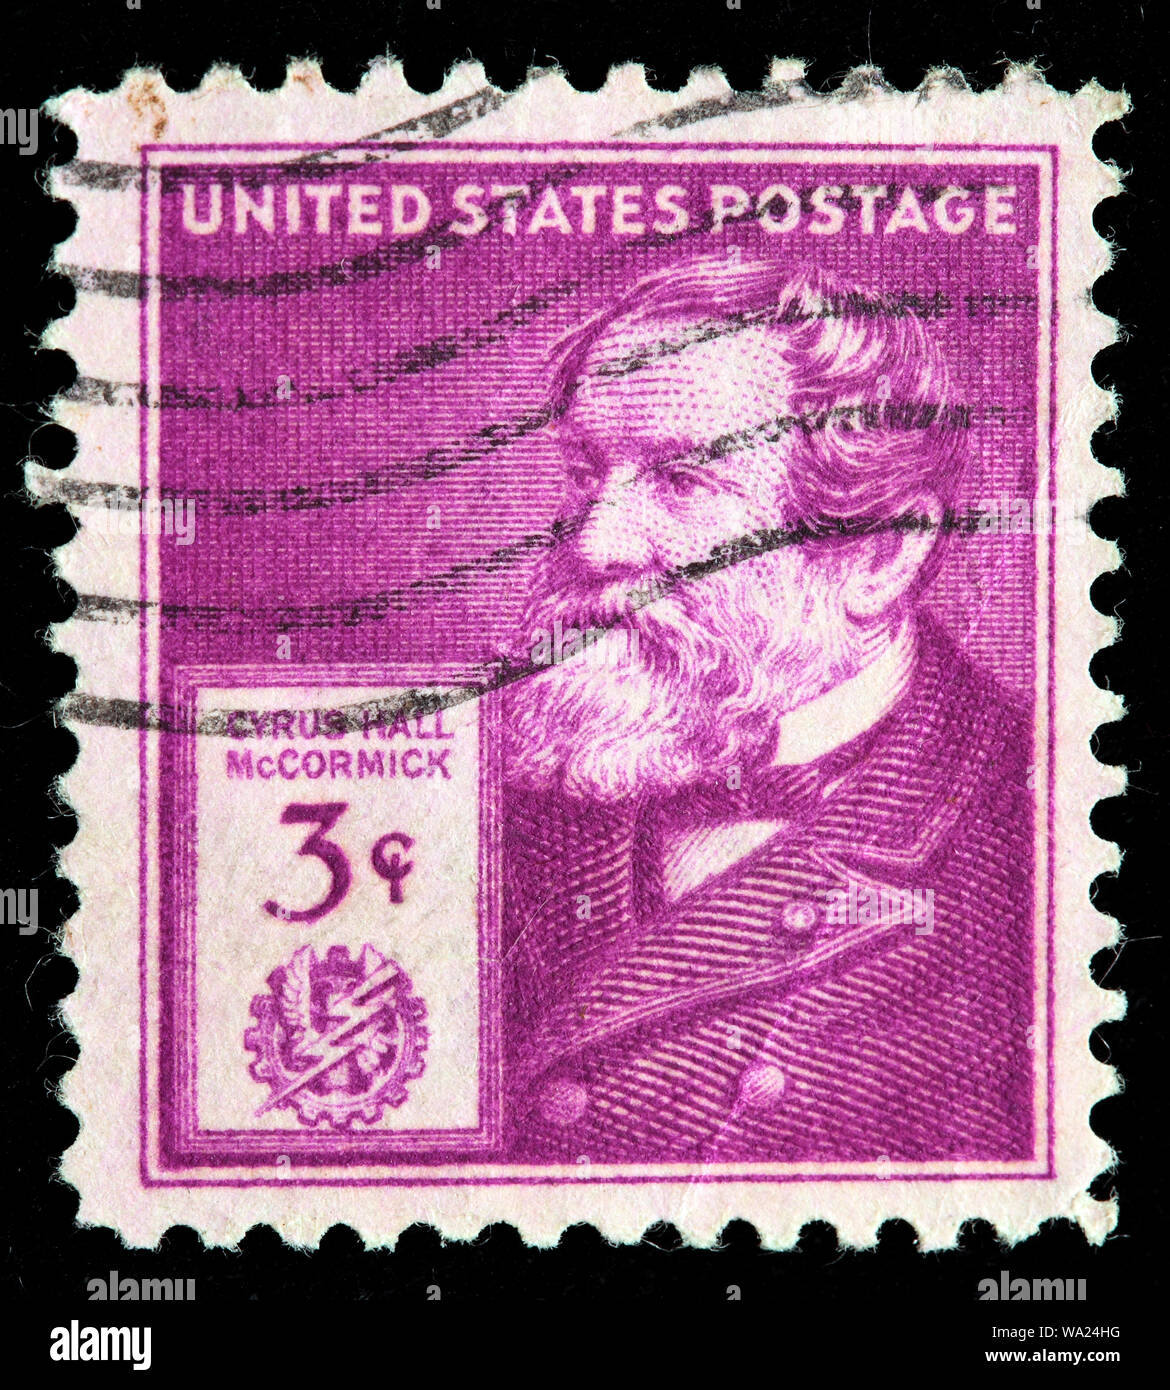 Cyrus Hall McCormick (1809-1884), inventeur américain, mécanique reaper, homme d'affaires, timbre-poste, USA, 1940 Banque D'Images